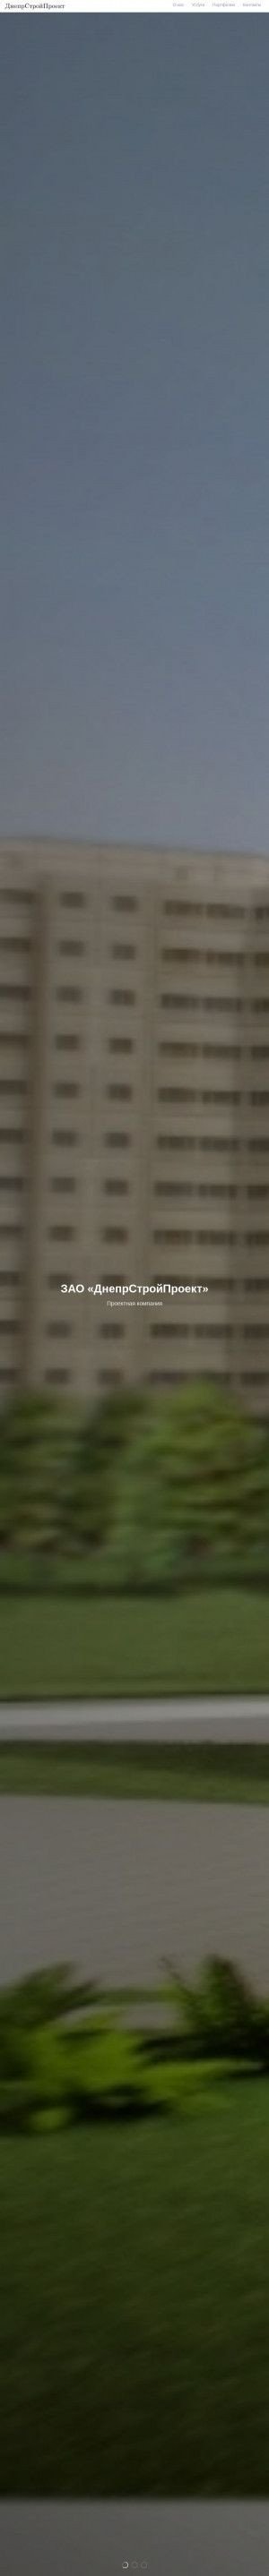 Предпросмотр для www.dsproekt.by — Днепрстройпроект